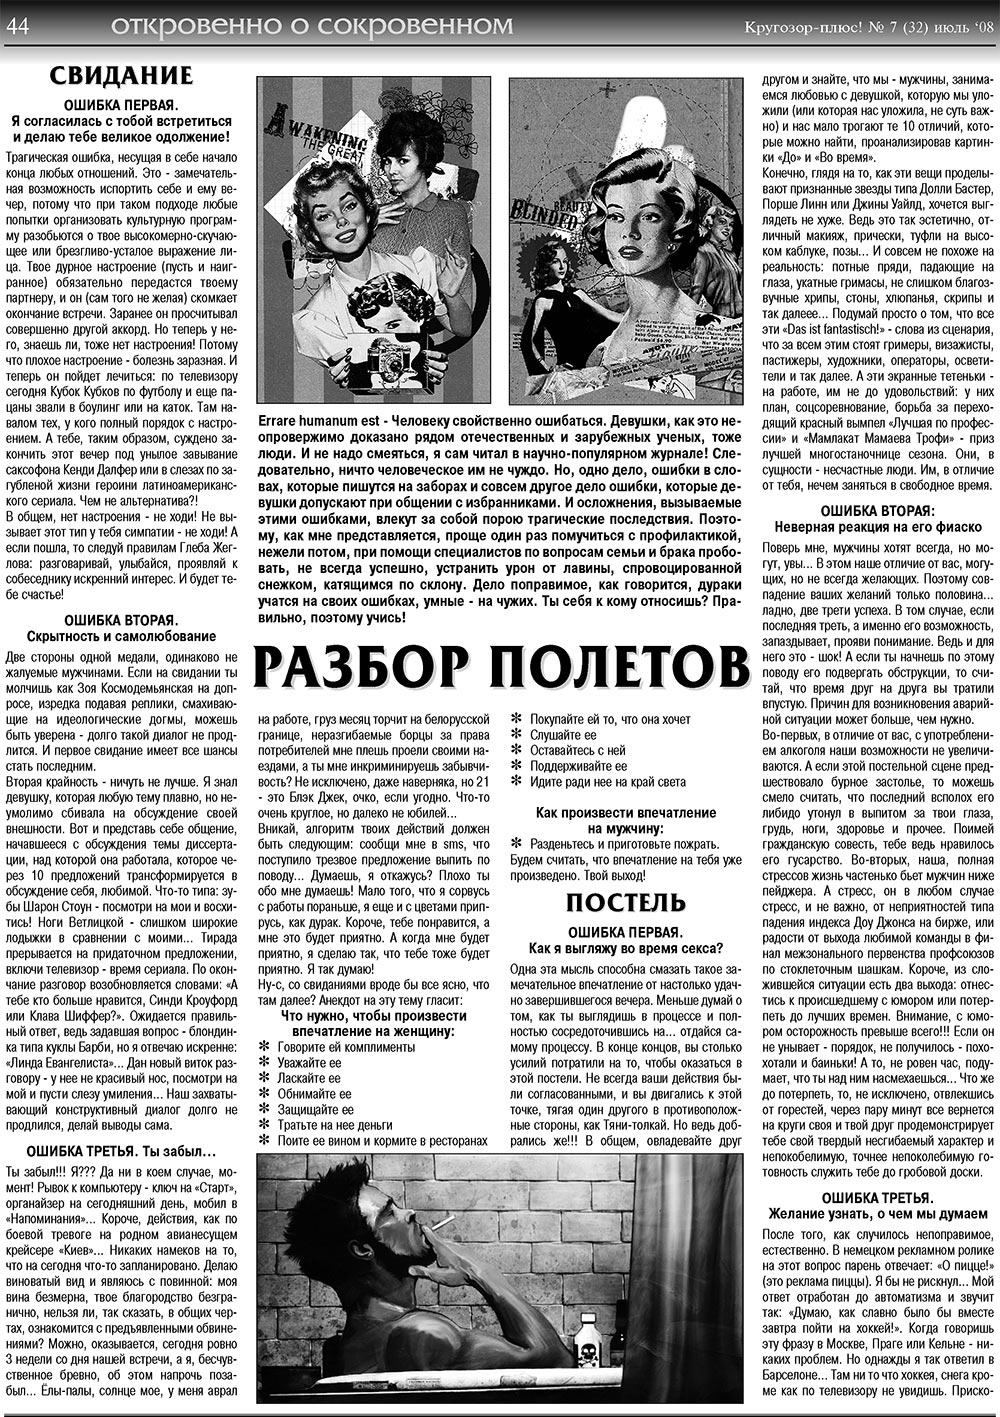 Кругозор плюс!, газета. 2008 №7 стр.44